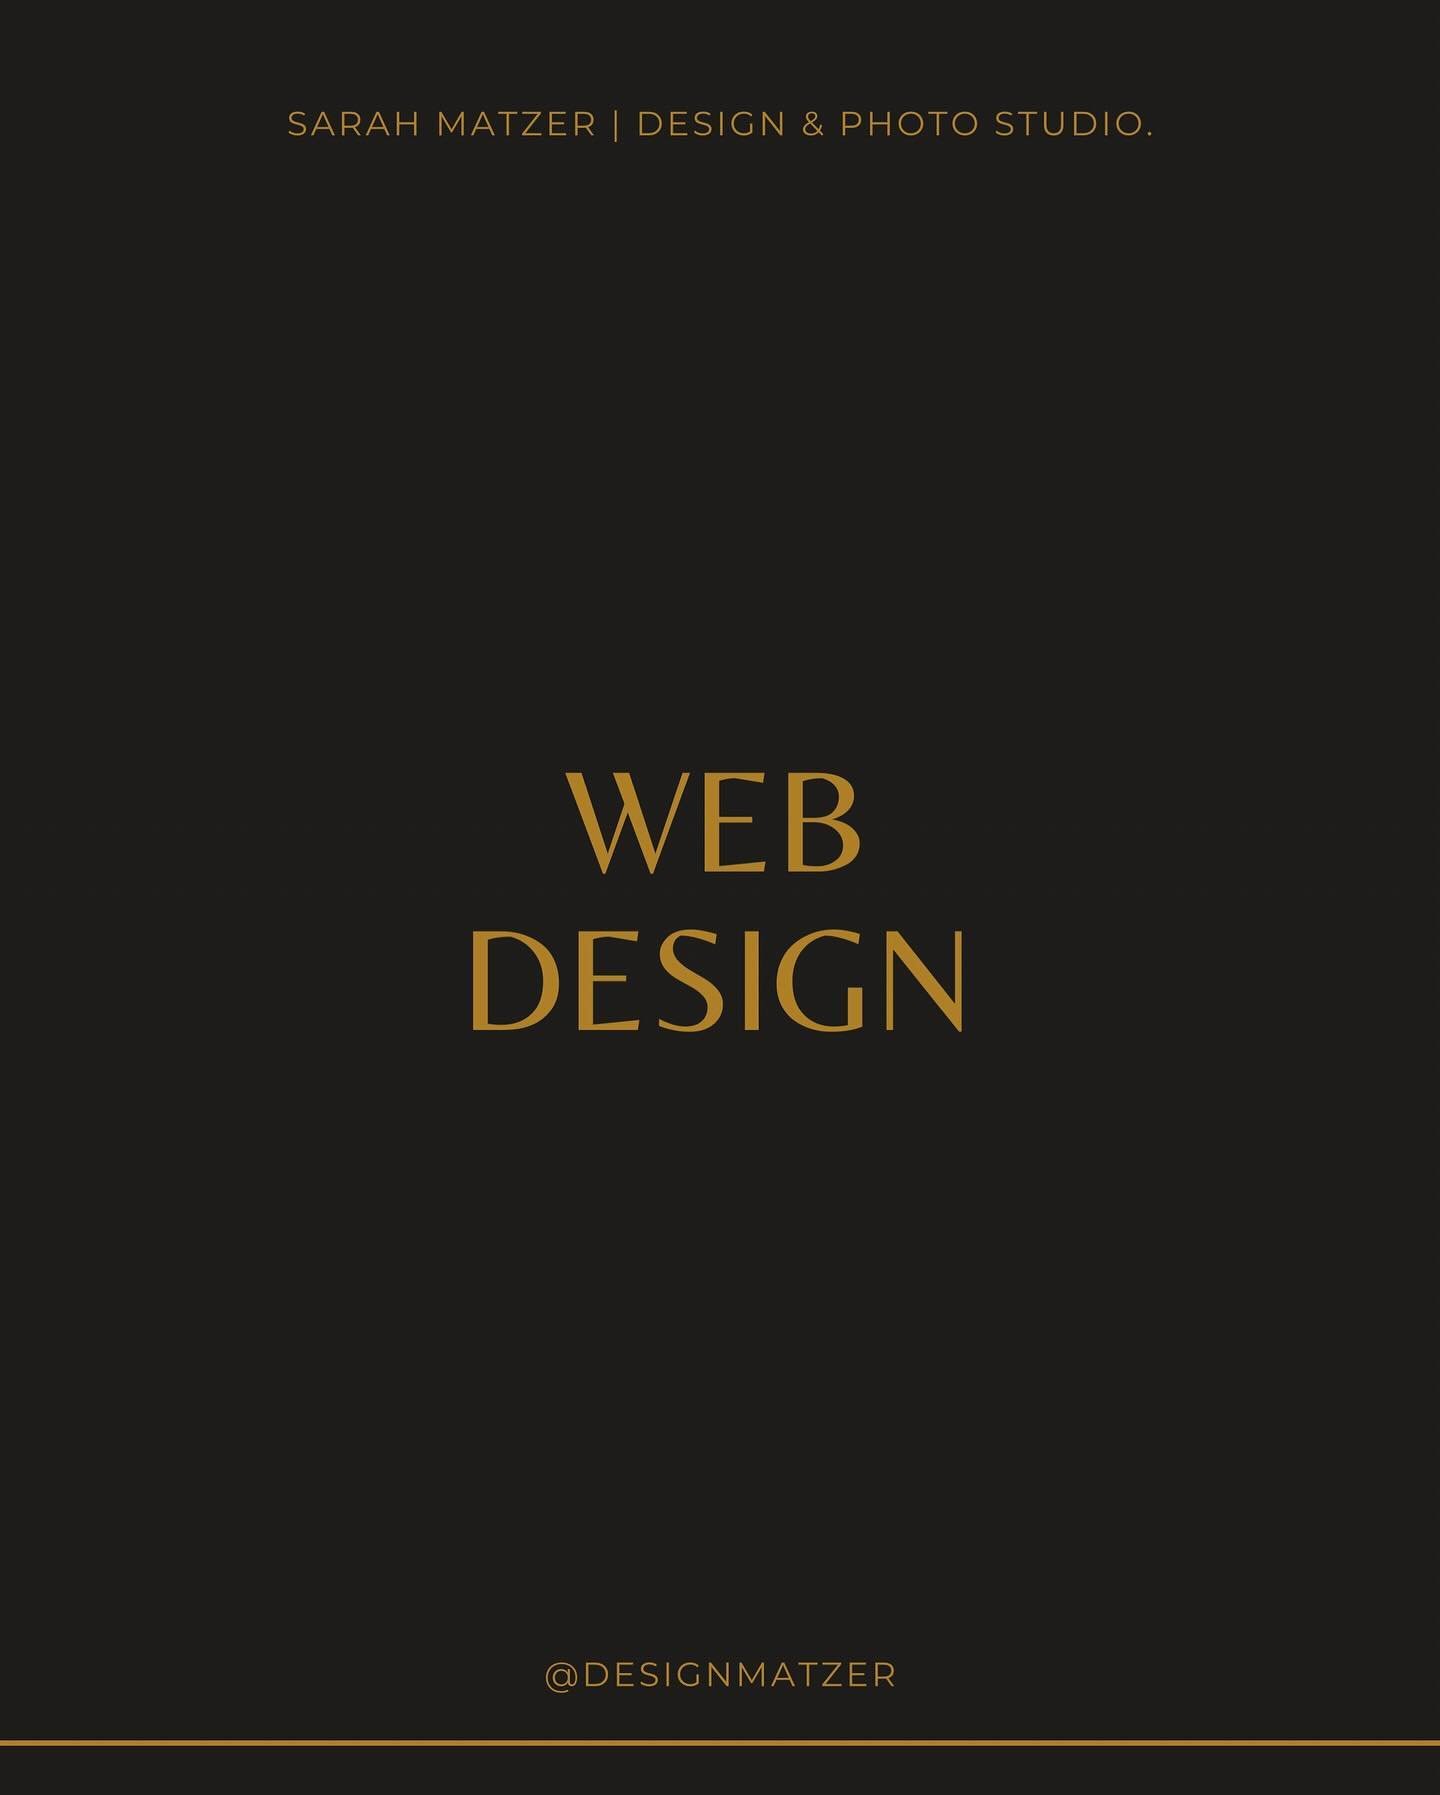 Bereit, deine Online-Pr&auml;senz auf das n&auml;chste Level zu bringen? Ich unterst&uuml;tze dich gerne bei deiner Webseite auf zwei Arten:

1. | Webdesign
Ich erstelle individuelles Webdesign, das auf deinem Corporate Design basiert. Das Screendesi